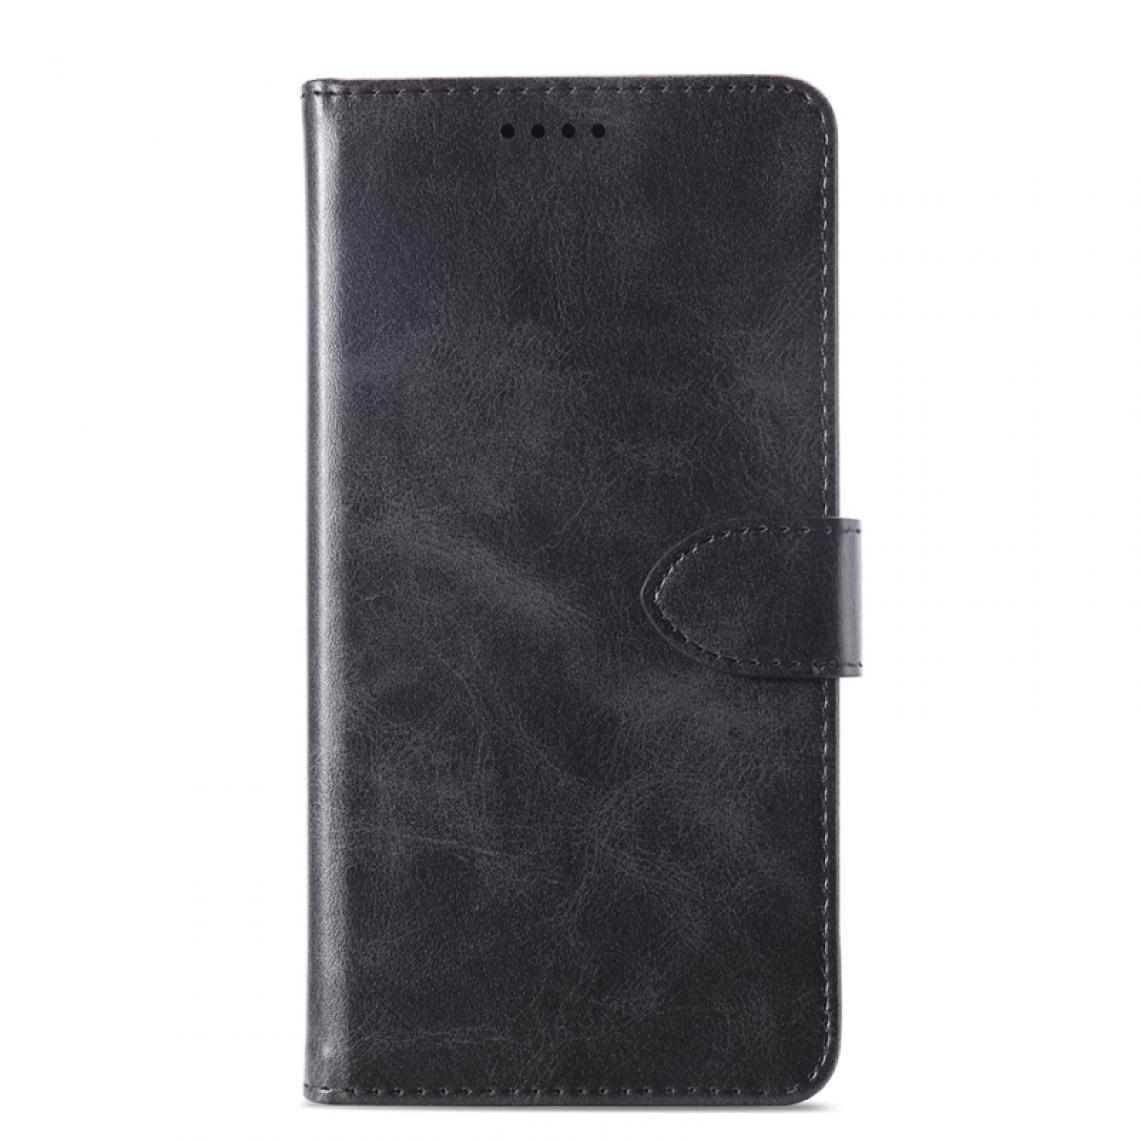 Wewoo - Housse Coque Étui à rabat horizontal en cuir vaché texturé pour Lenovo S5 Proavec supportlogements cartes et portefeuille noir - Coque, étui smartphone